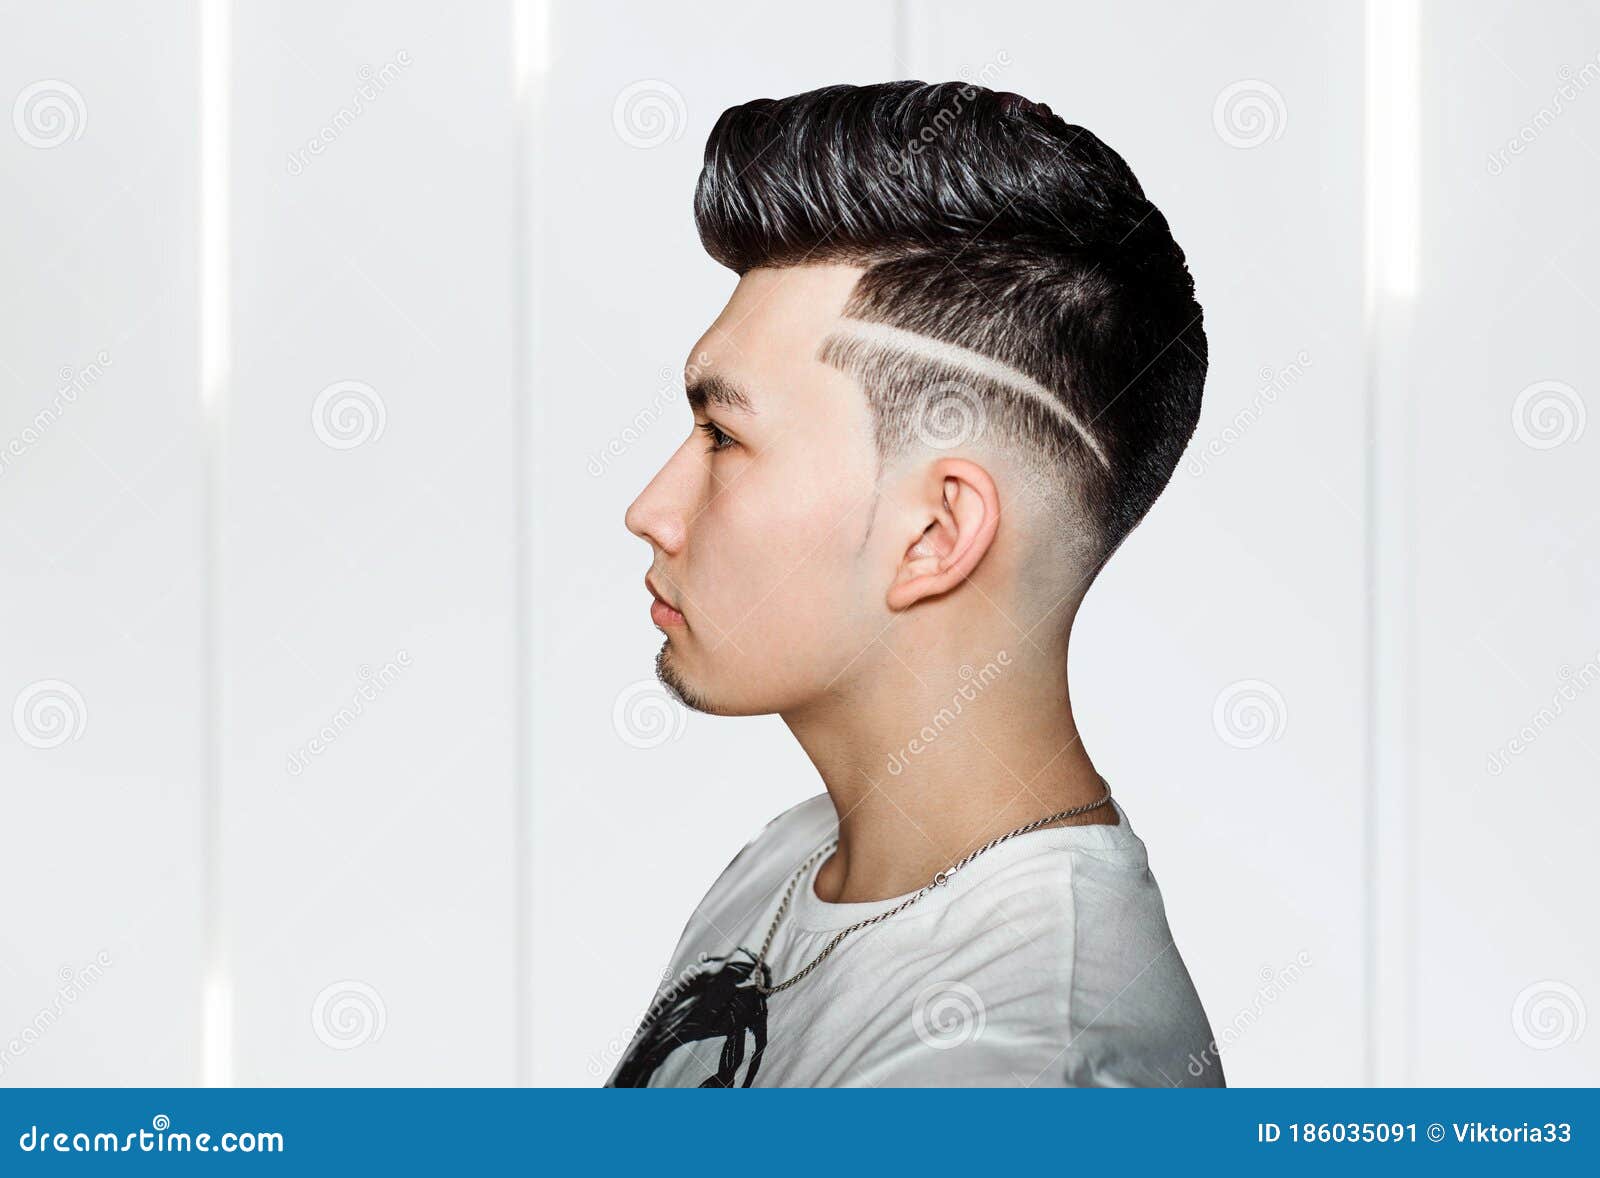 Men's Pompadour Hairstyles 2018 | Pompadour Hairstyles & Haircuts For Men | Pompadour  haircut, Pompadour hairstyle, Mens hairstyles pompadour